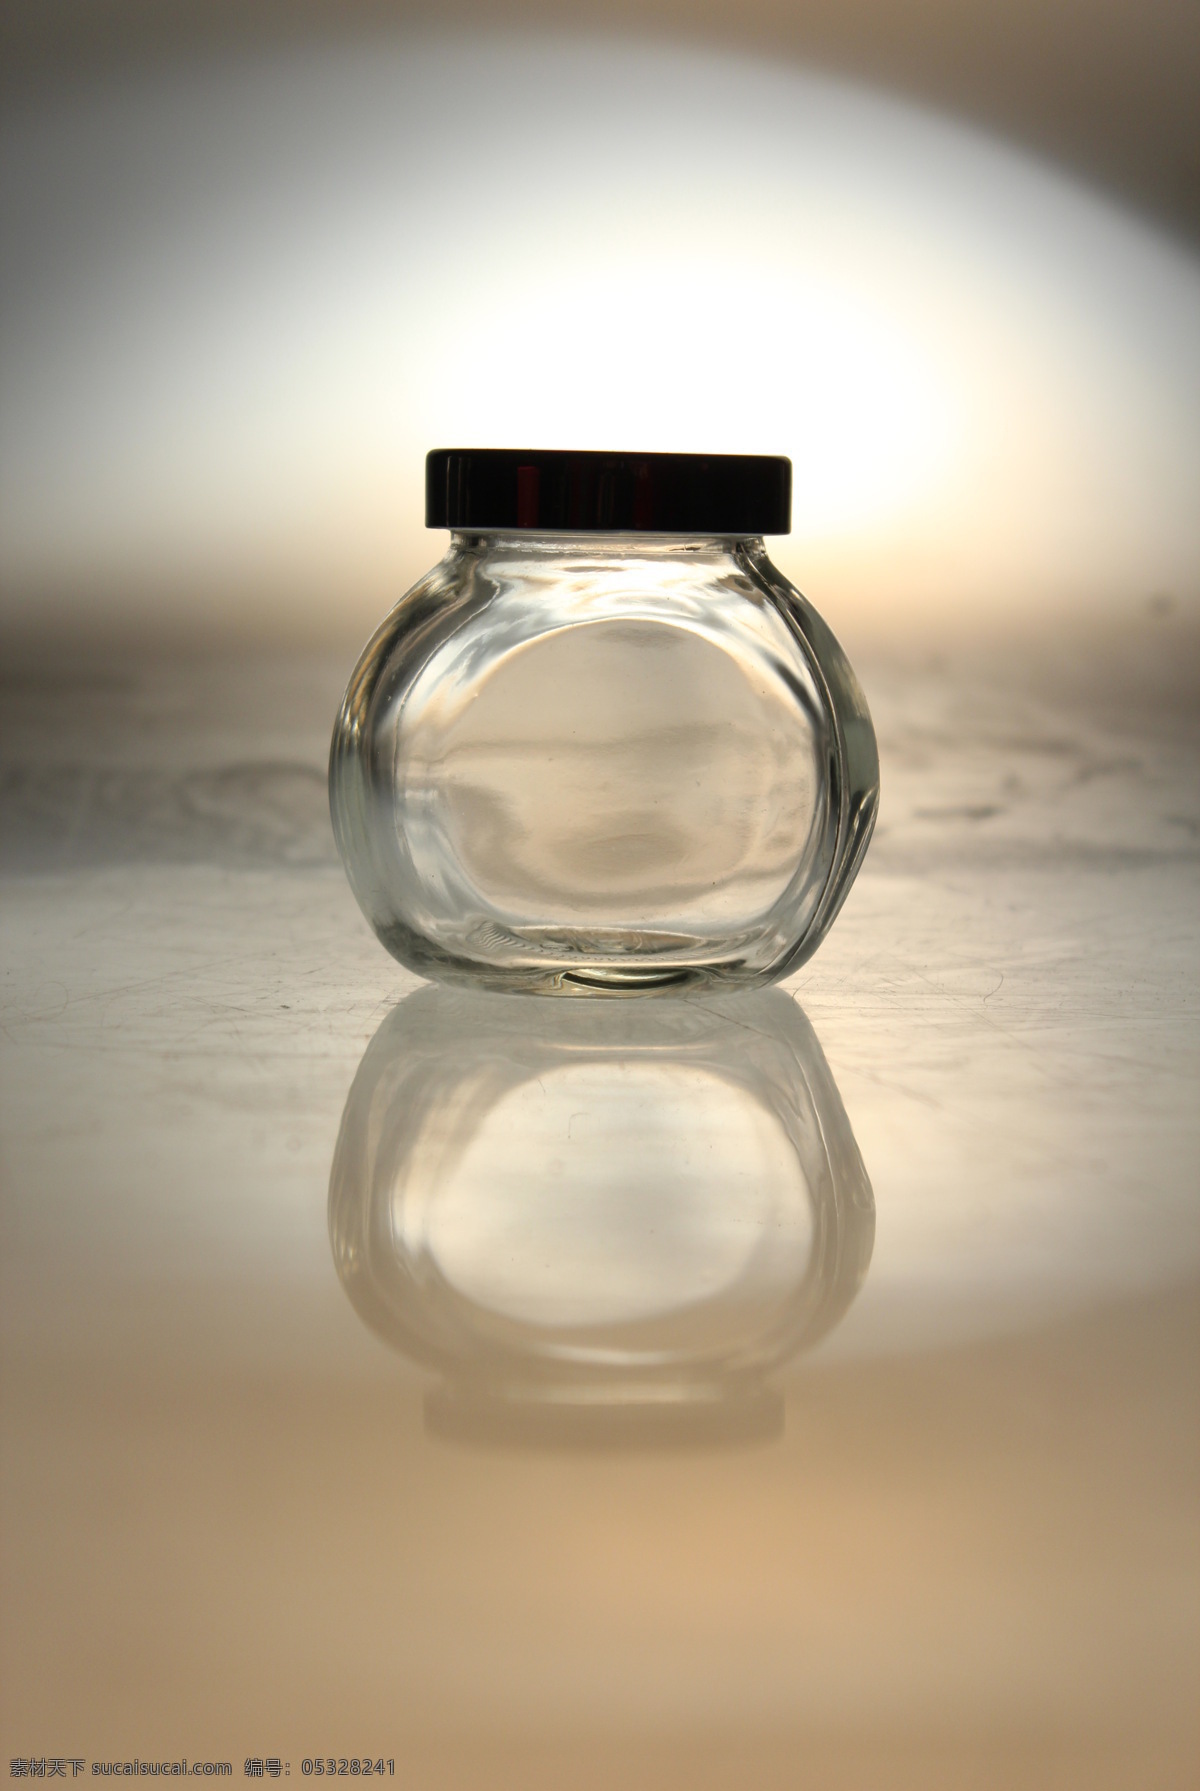 单个玻璃罐 玻璃 透明 静物 瓶子 生活百科 生活素材